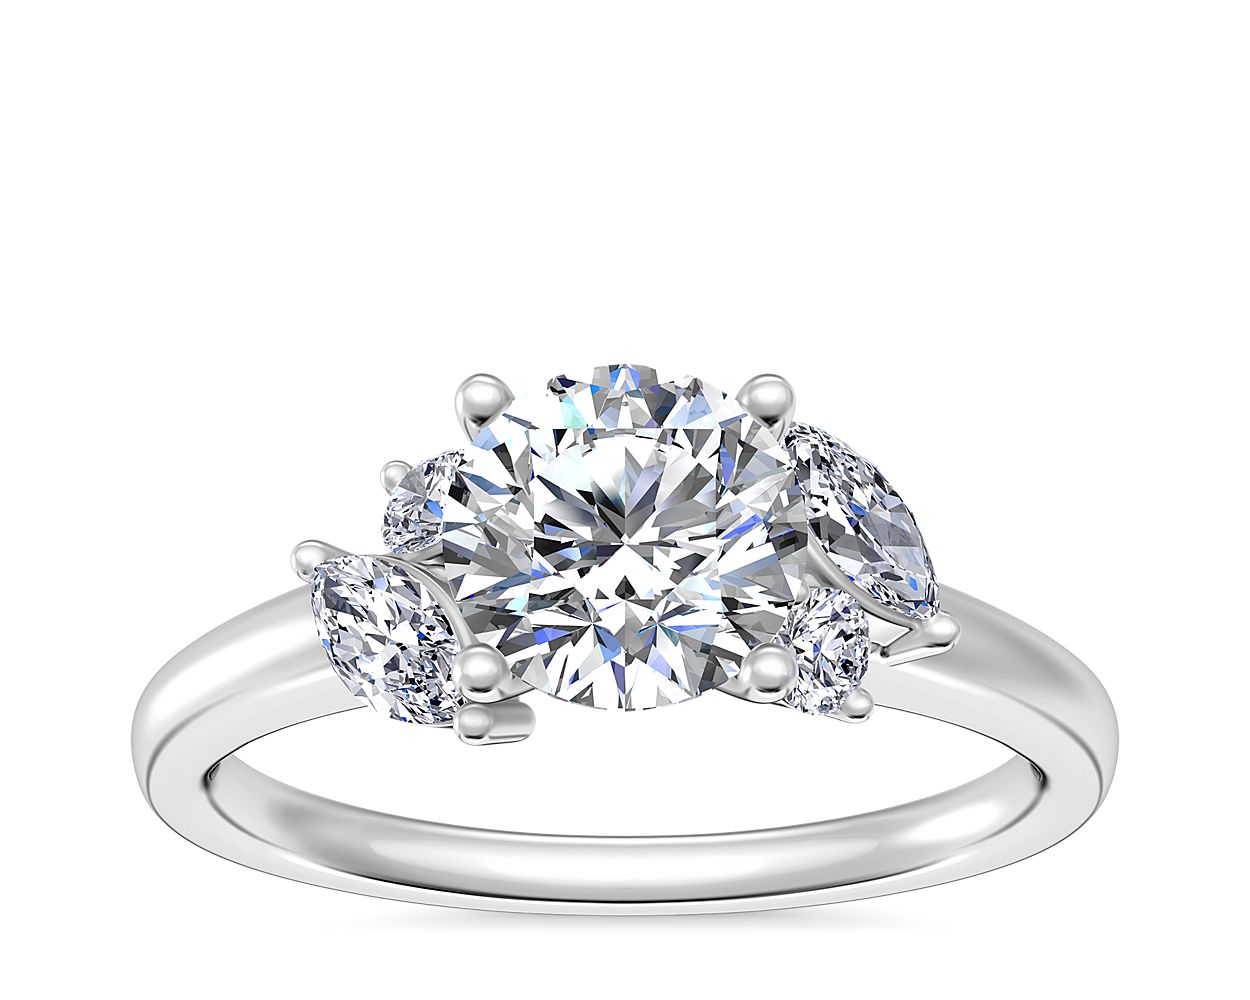 J'adore Le Jardin Diamond Engagement Ring in Platinum (1/5 ct. tw.)